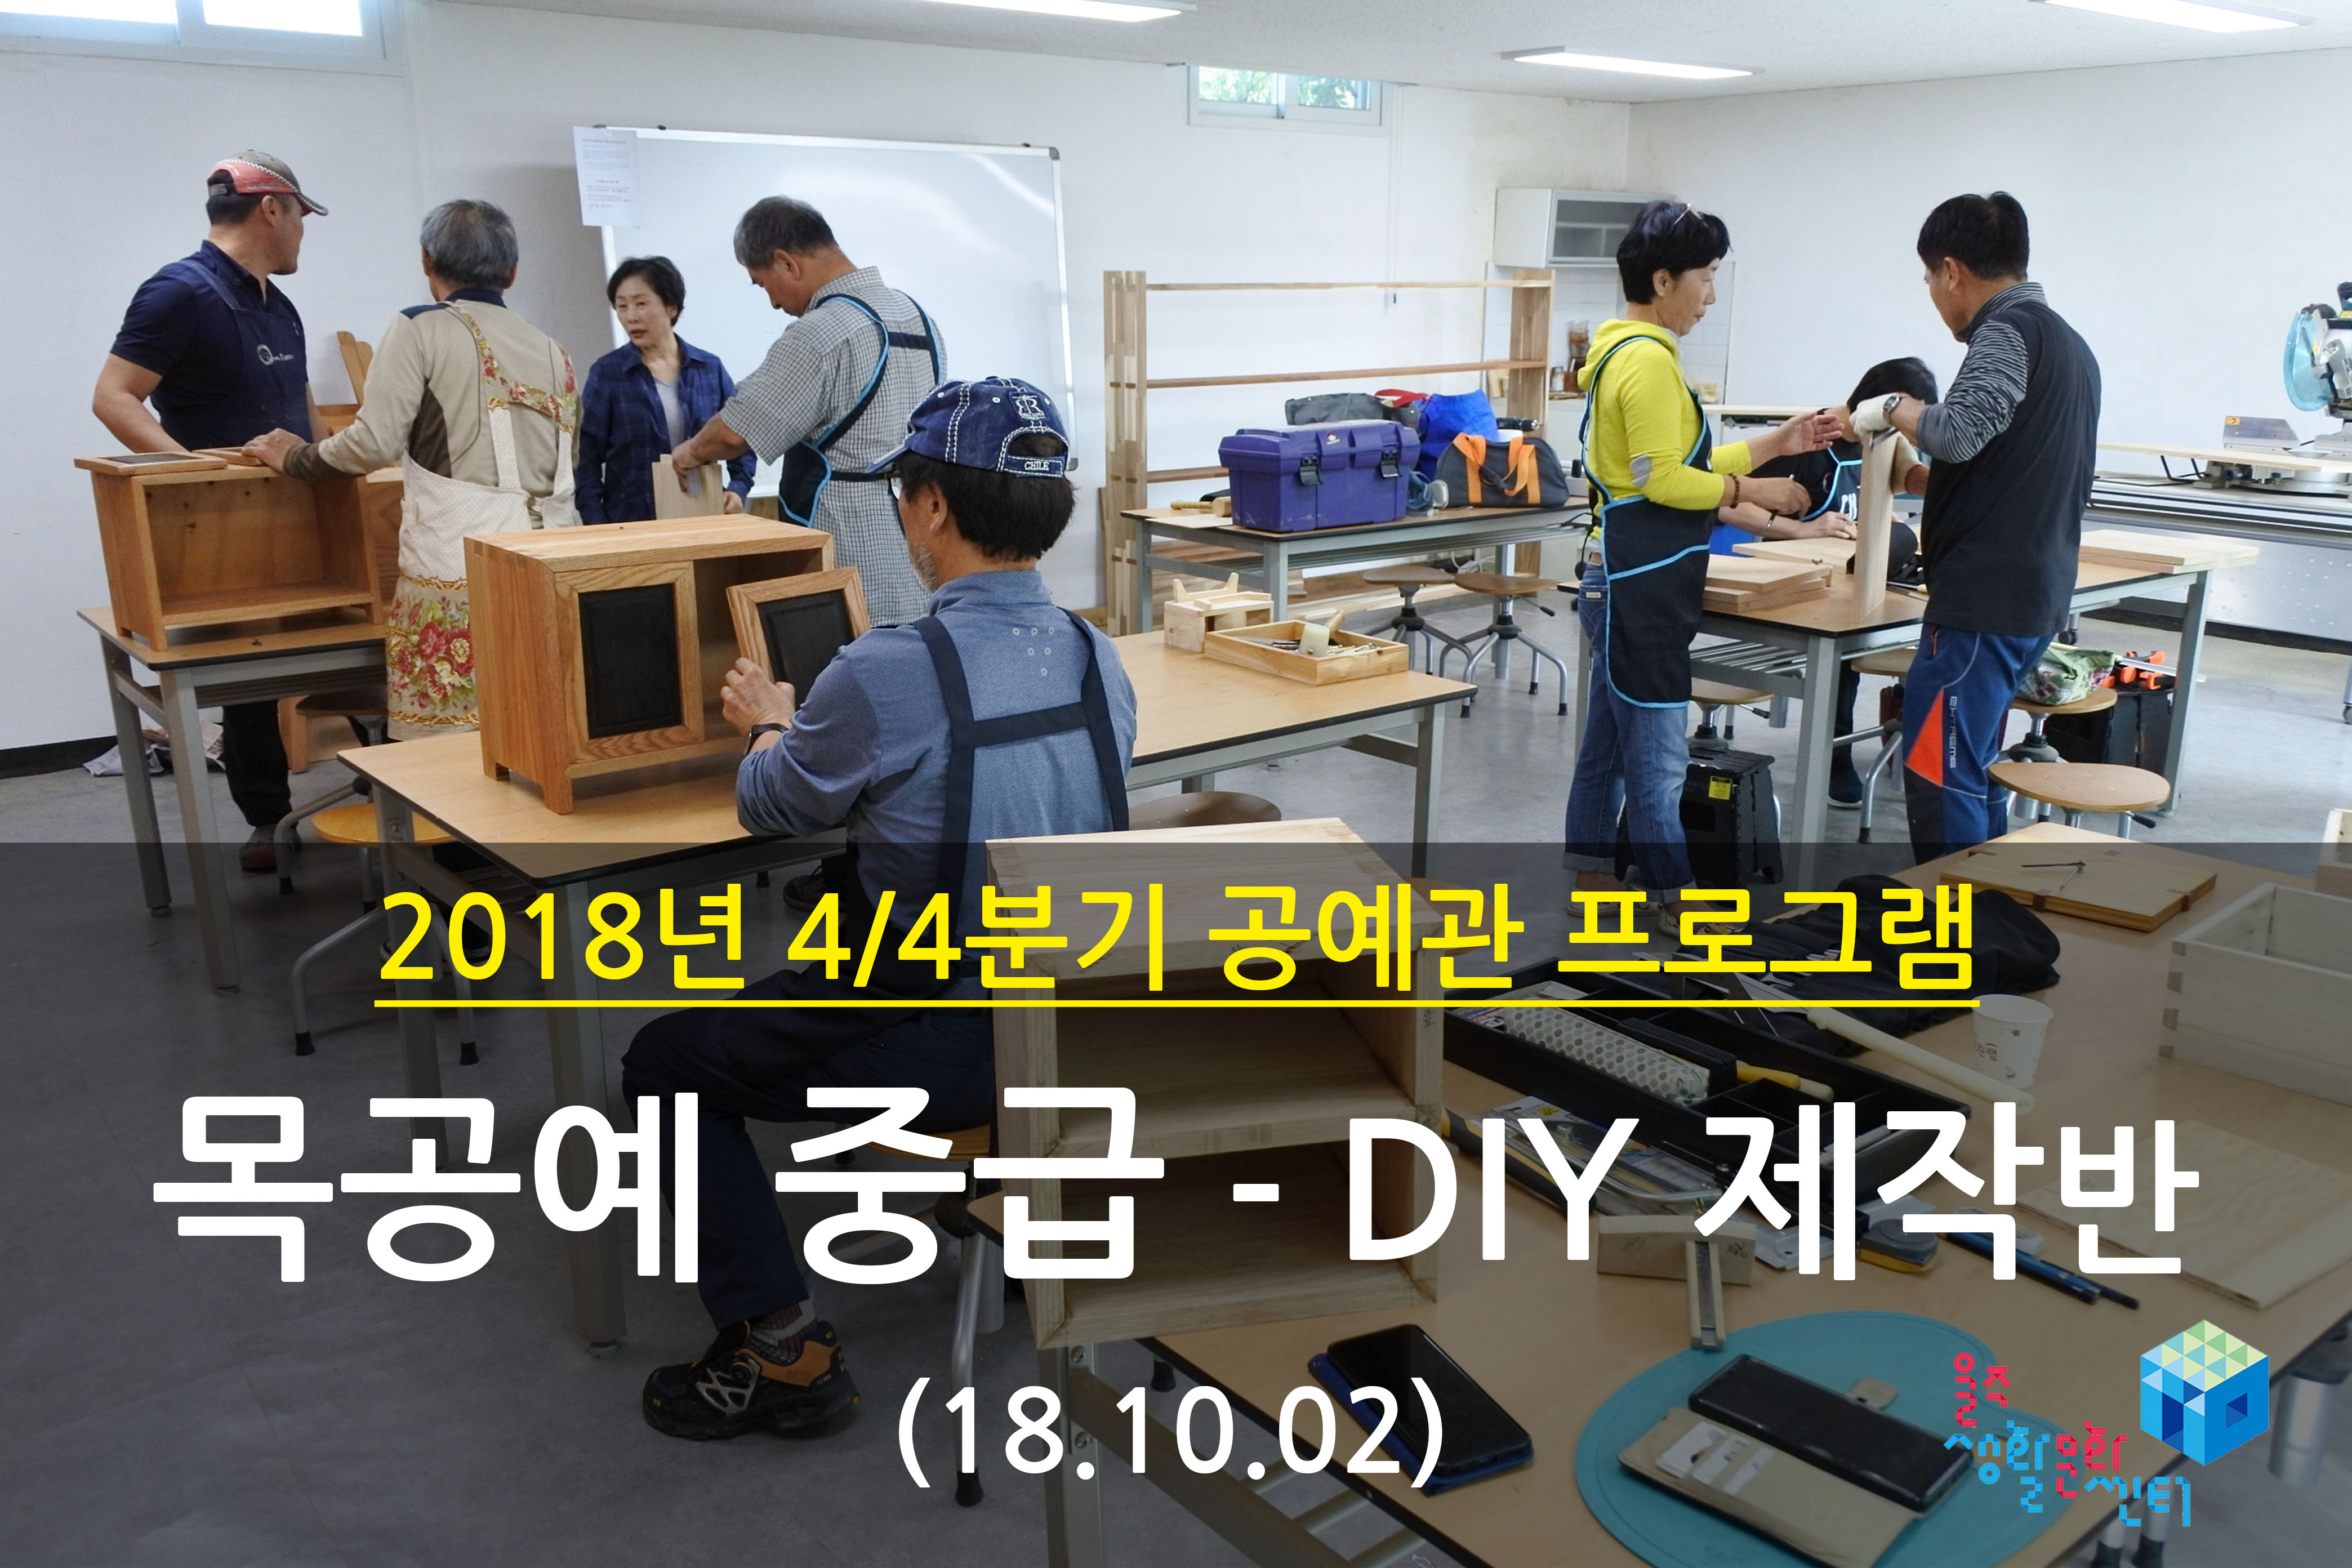 2018.10.02 _ 목공예 중급 - DIY 제작반 _ 4/4분기 1주차 수업